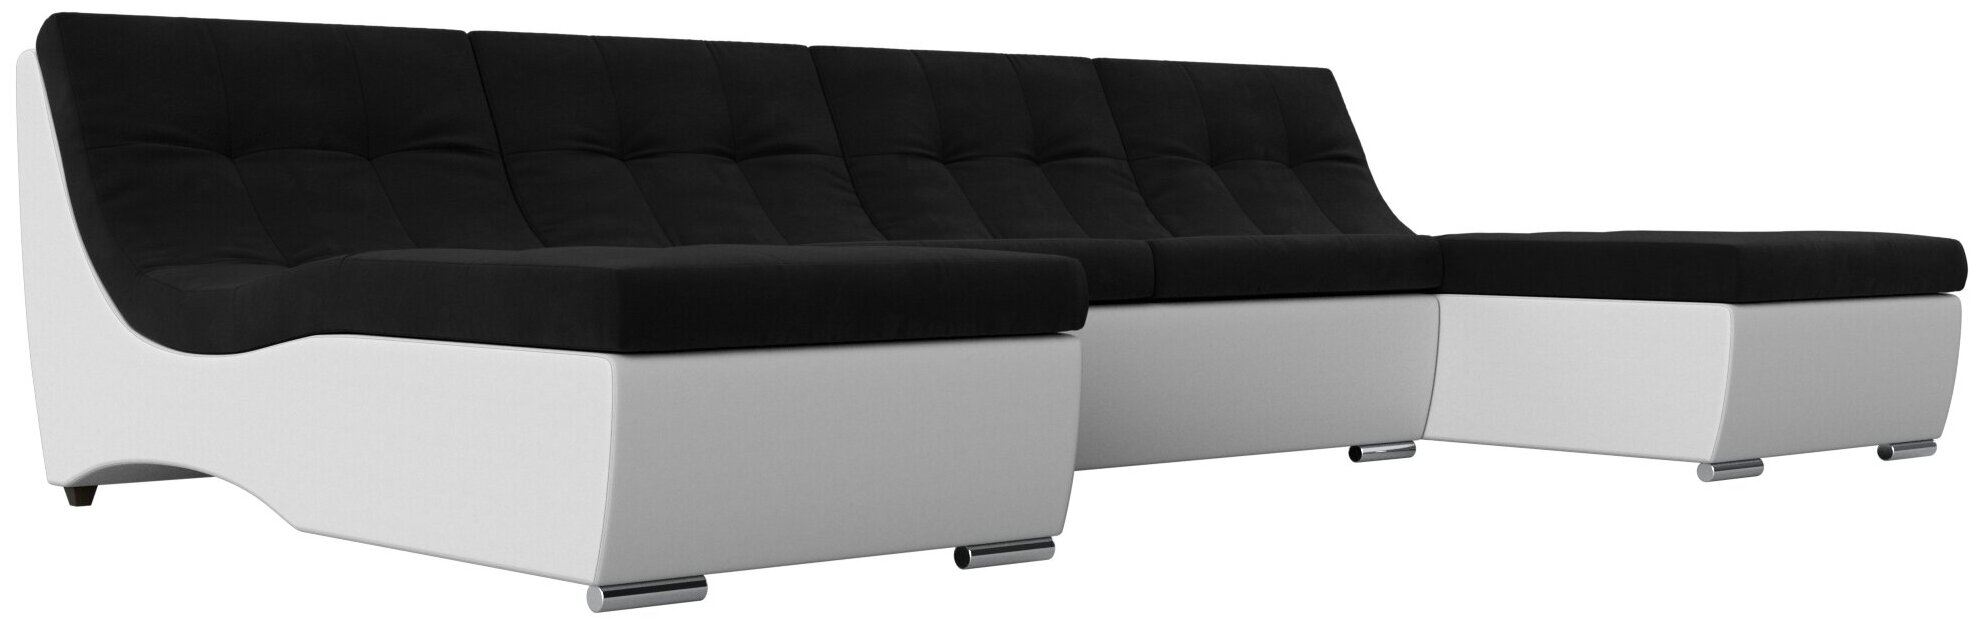 П-образный модульный диван Монреаль, Микровельвет, Модель 111565